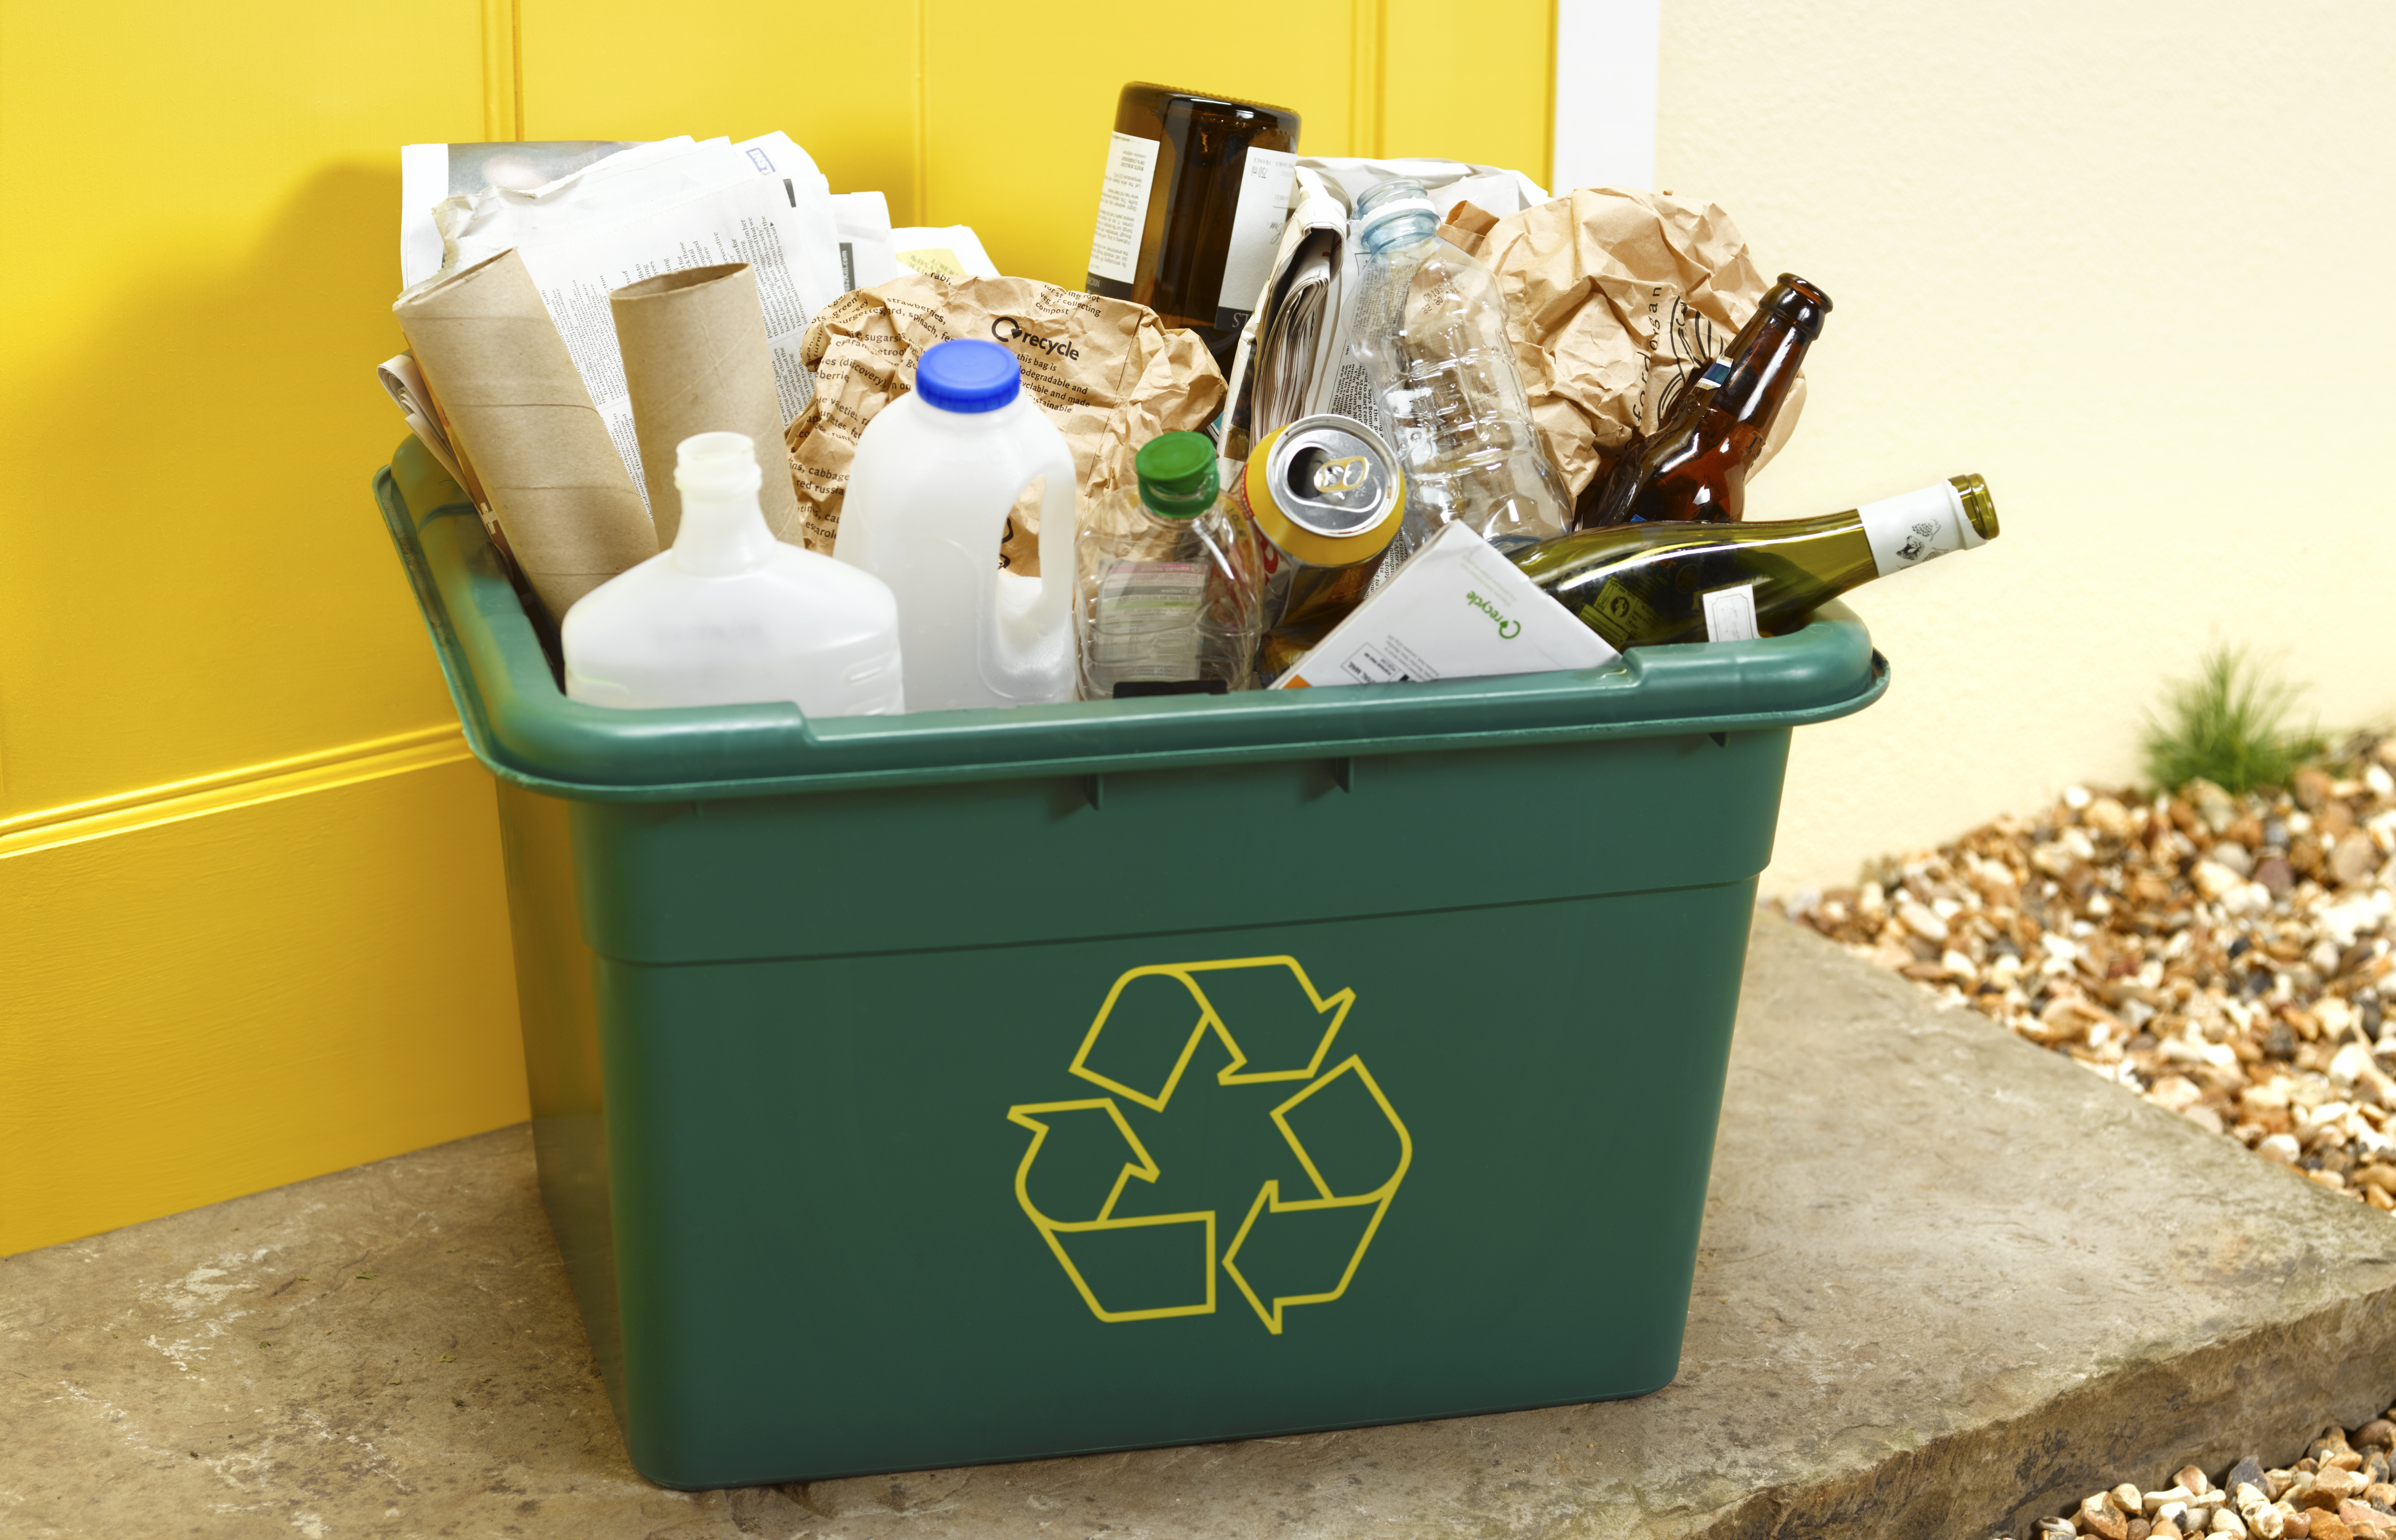 Auch wenn Sie das Recycling weglassen, könnten Sie in diesem Jahr zur Zielscheibe werden